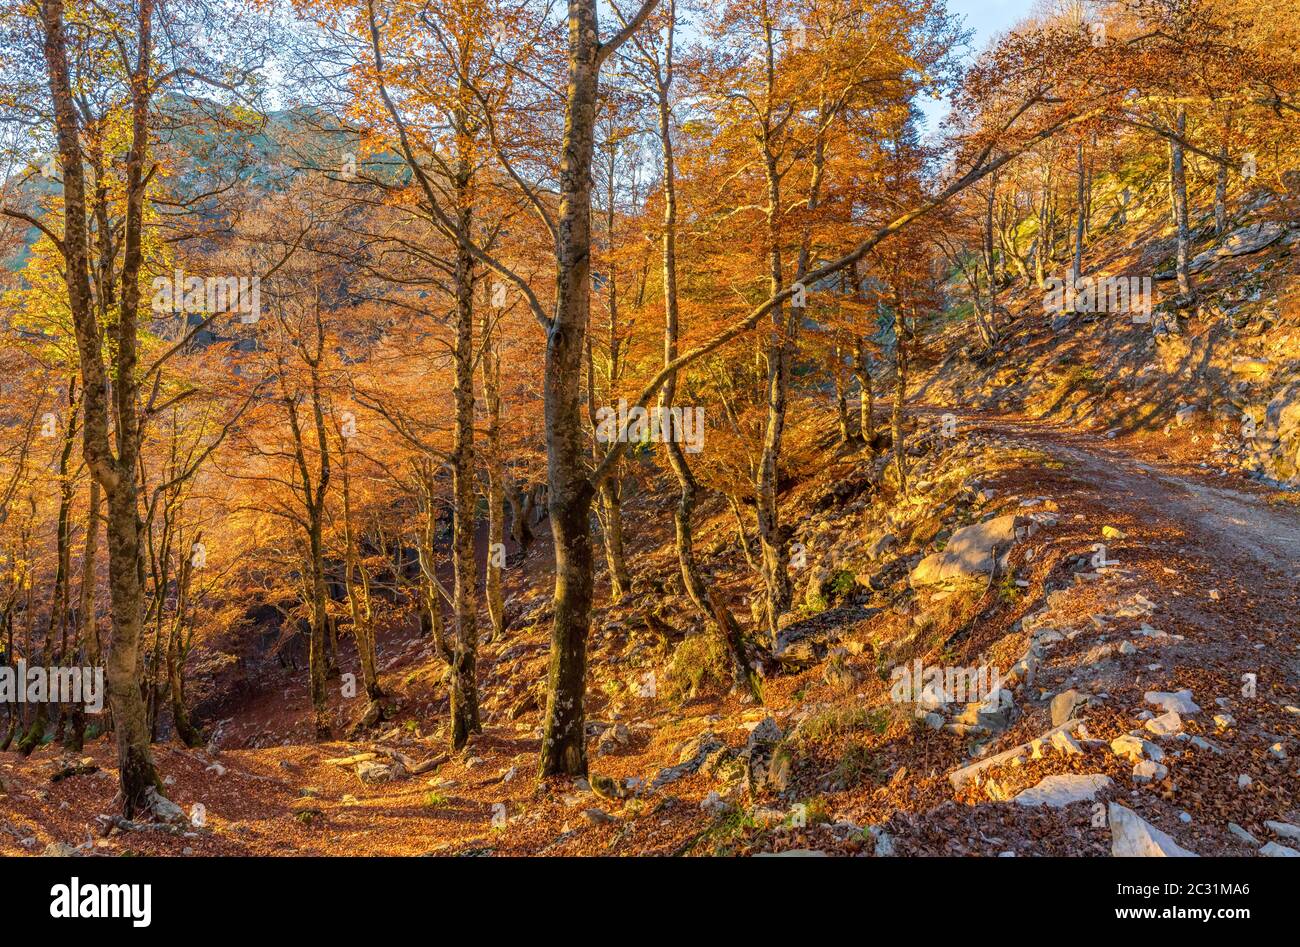 Paysage avec forêt d'Iraty, pays Basque, Pyrénées-Atlantique, France Banque D'Images